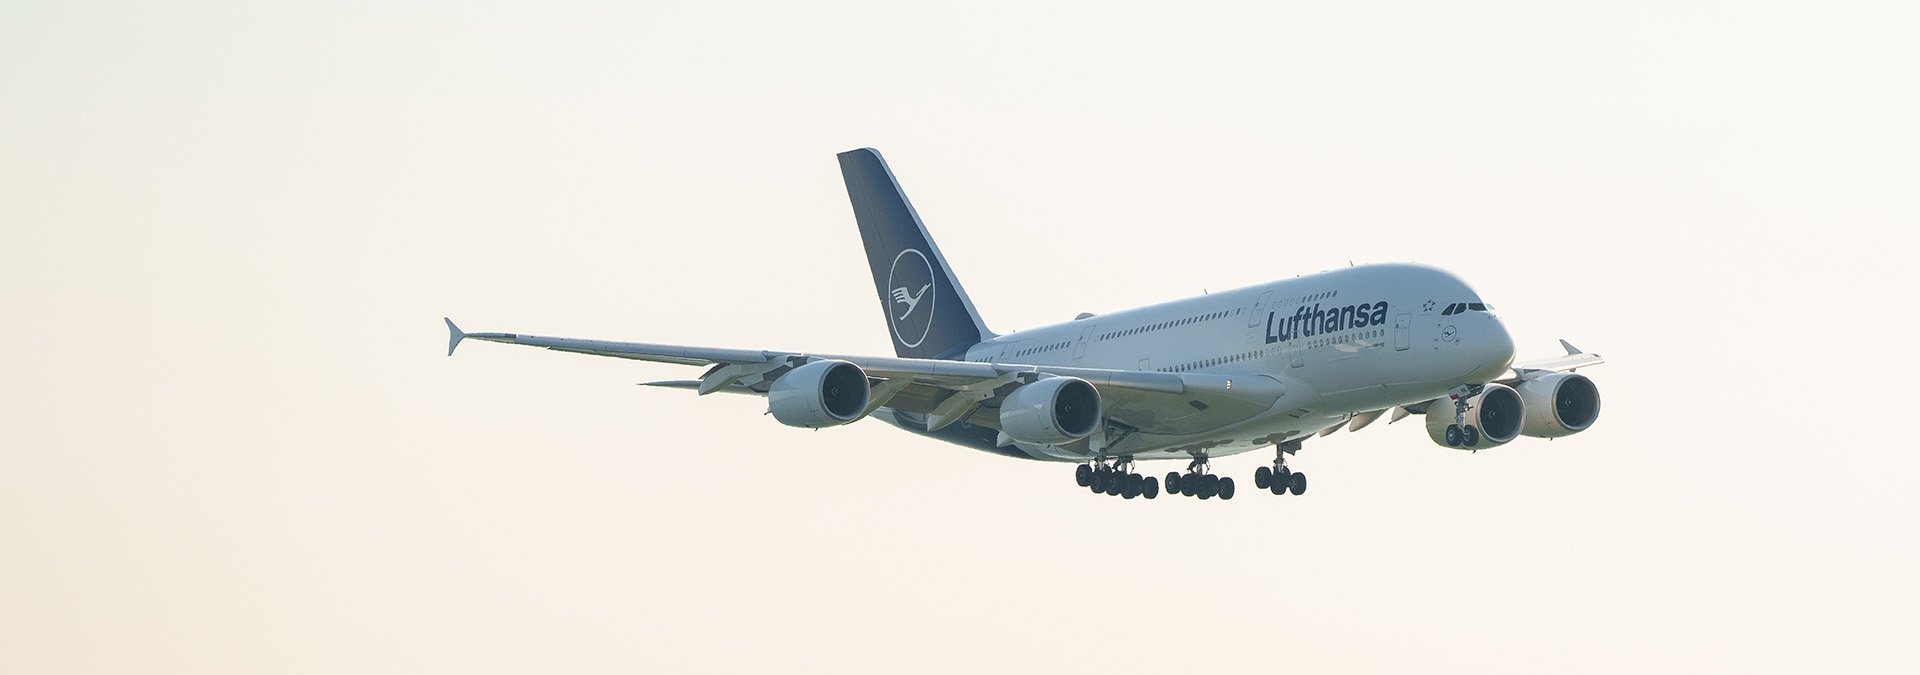 Lufthansa A380 airplane flying